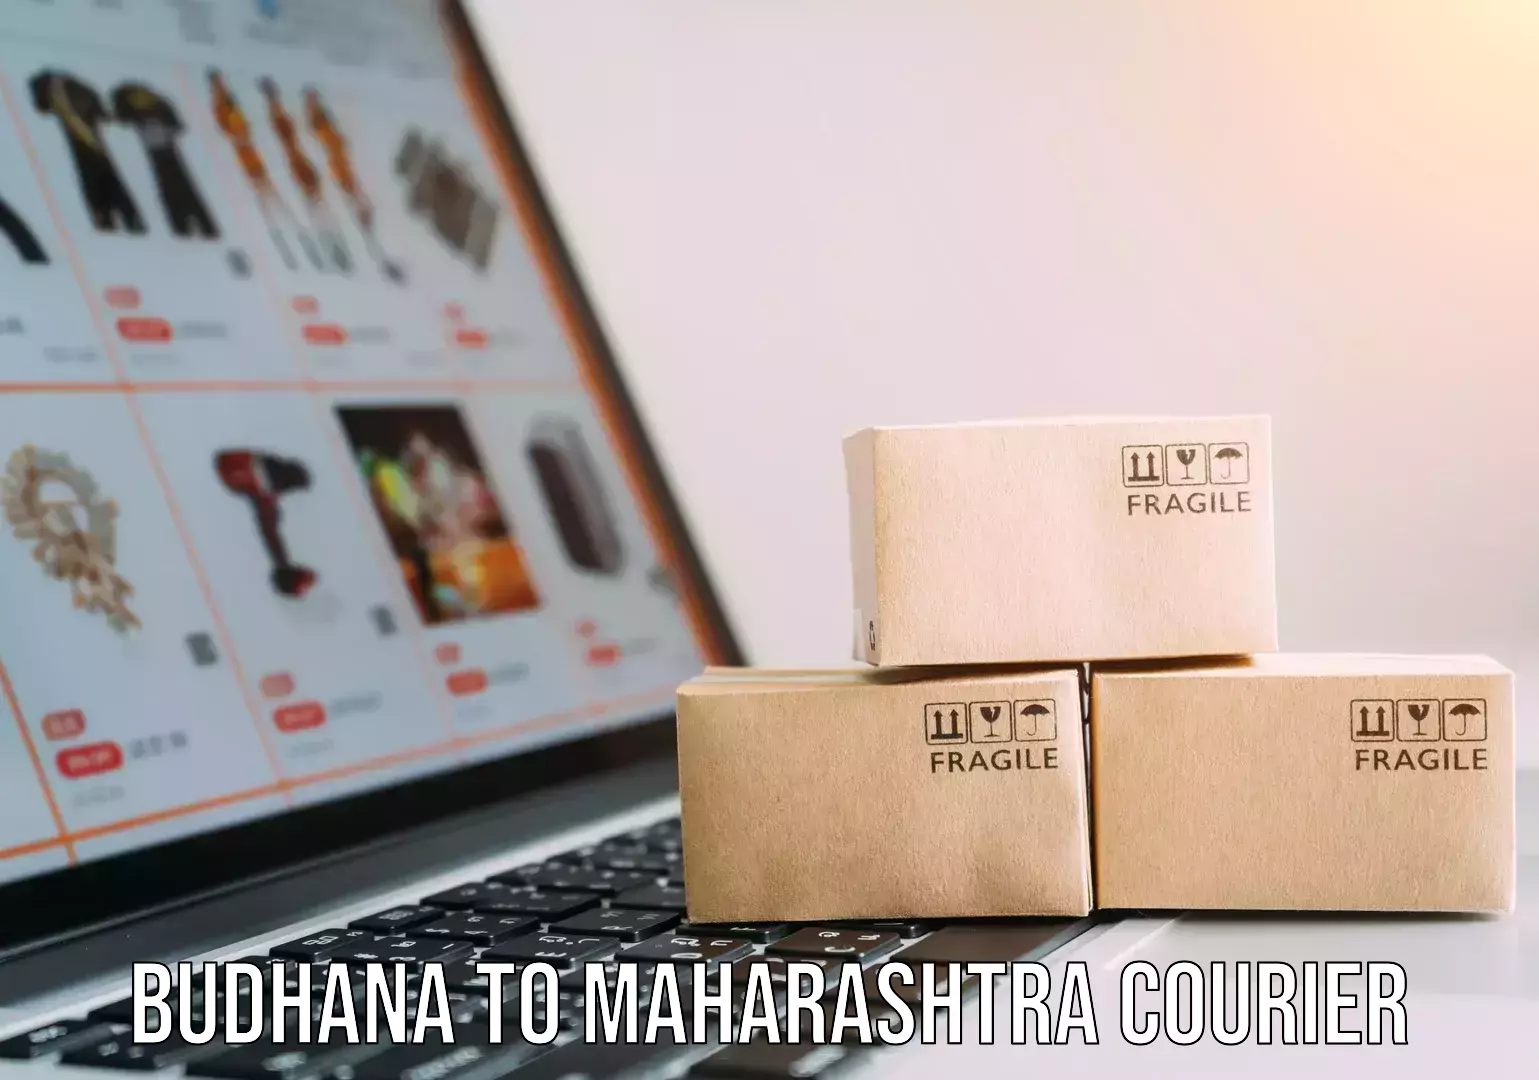 Quality courier partnerships in Budhana to Maharashtra